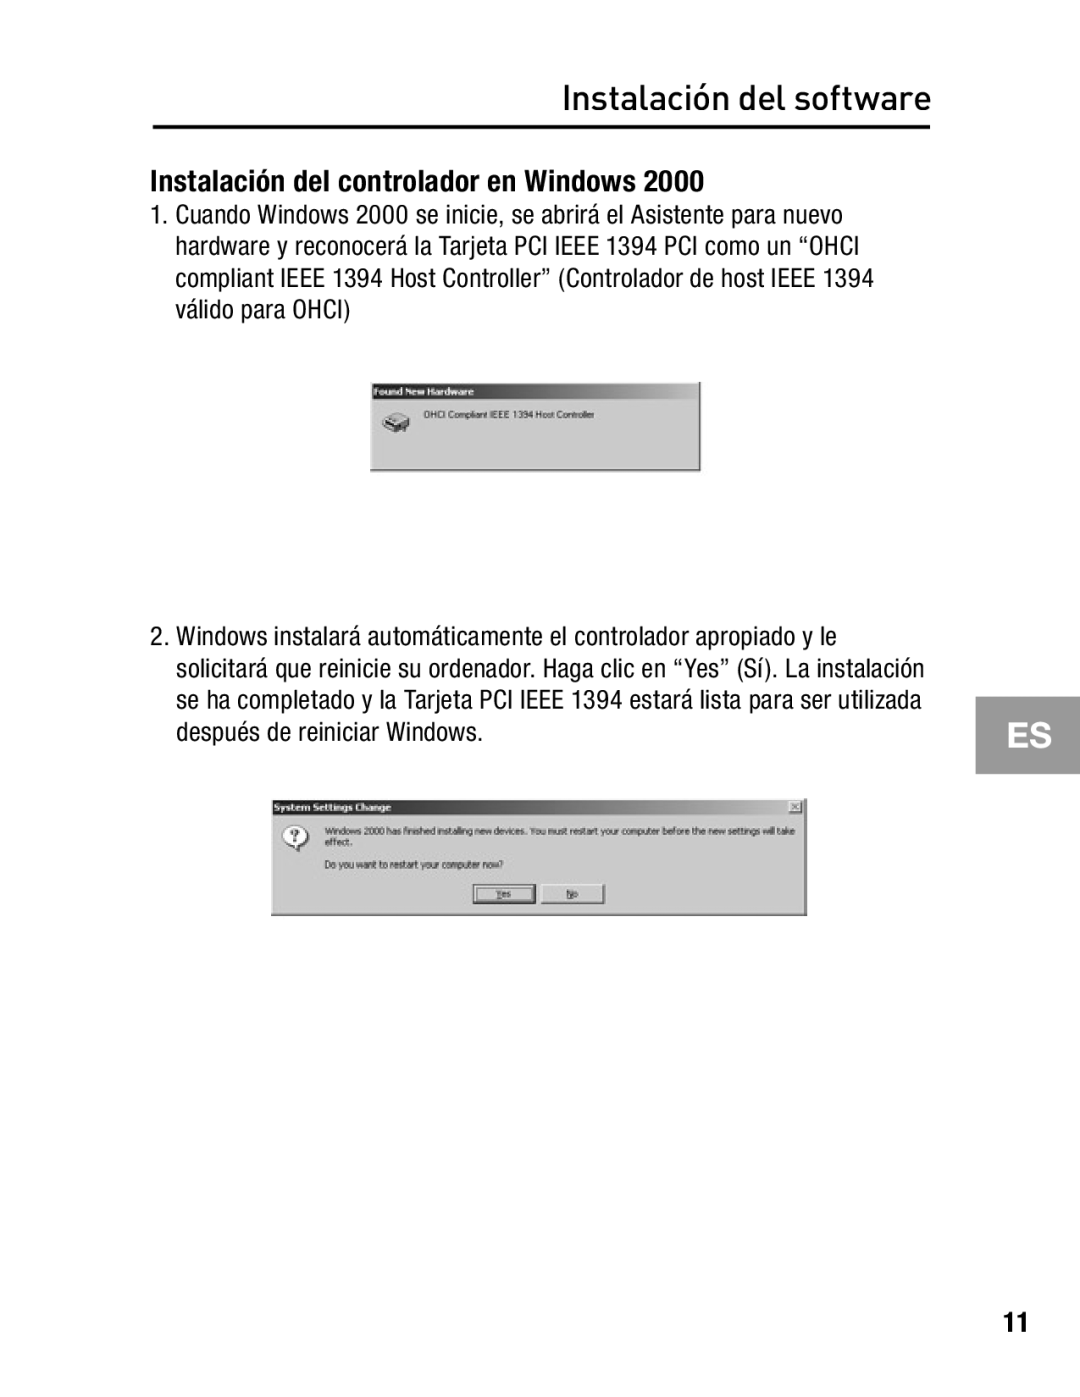 Belkin F5U502, F5U503 Instalación del controlador en Windows, después de reiniciar Windows, Instalación del software 